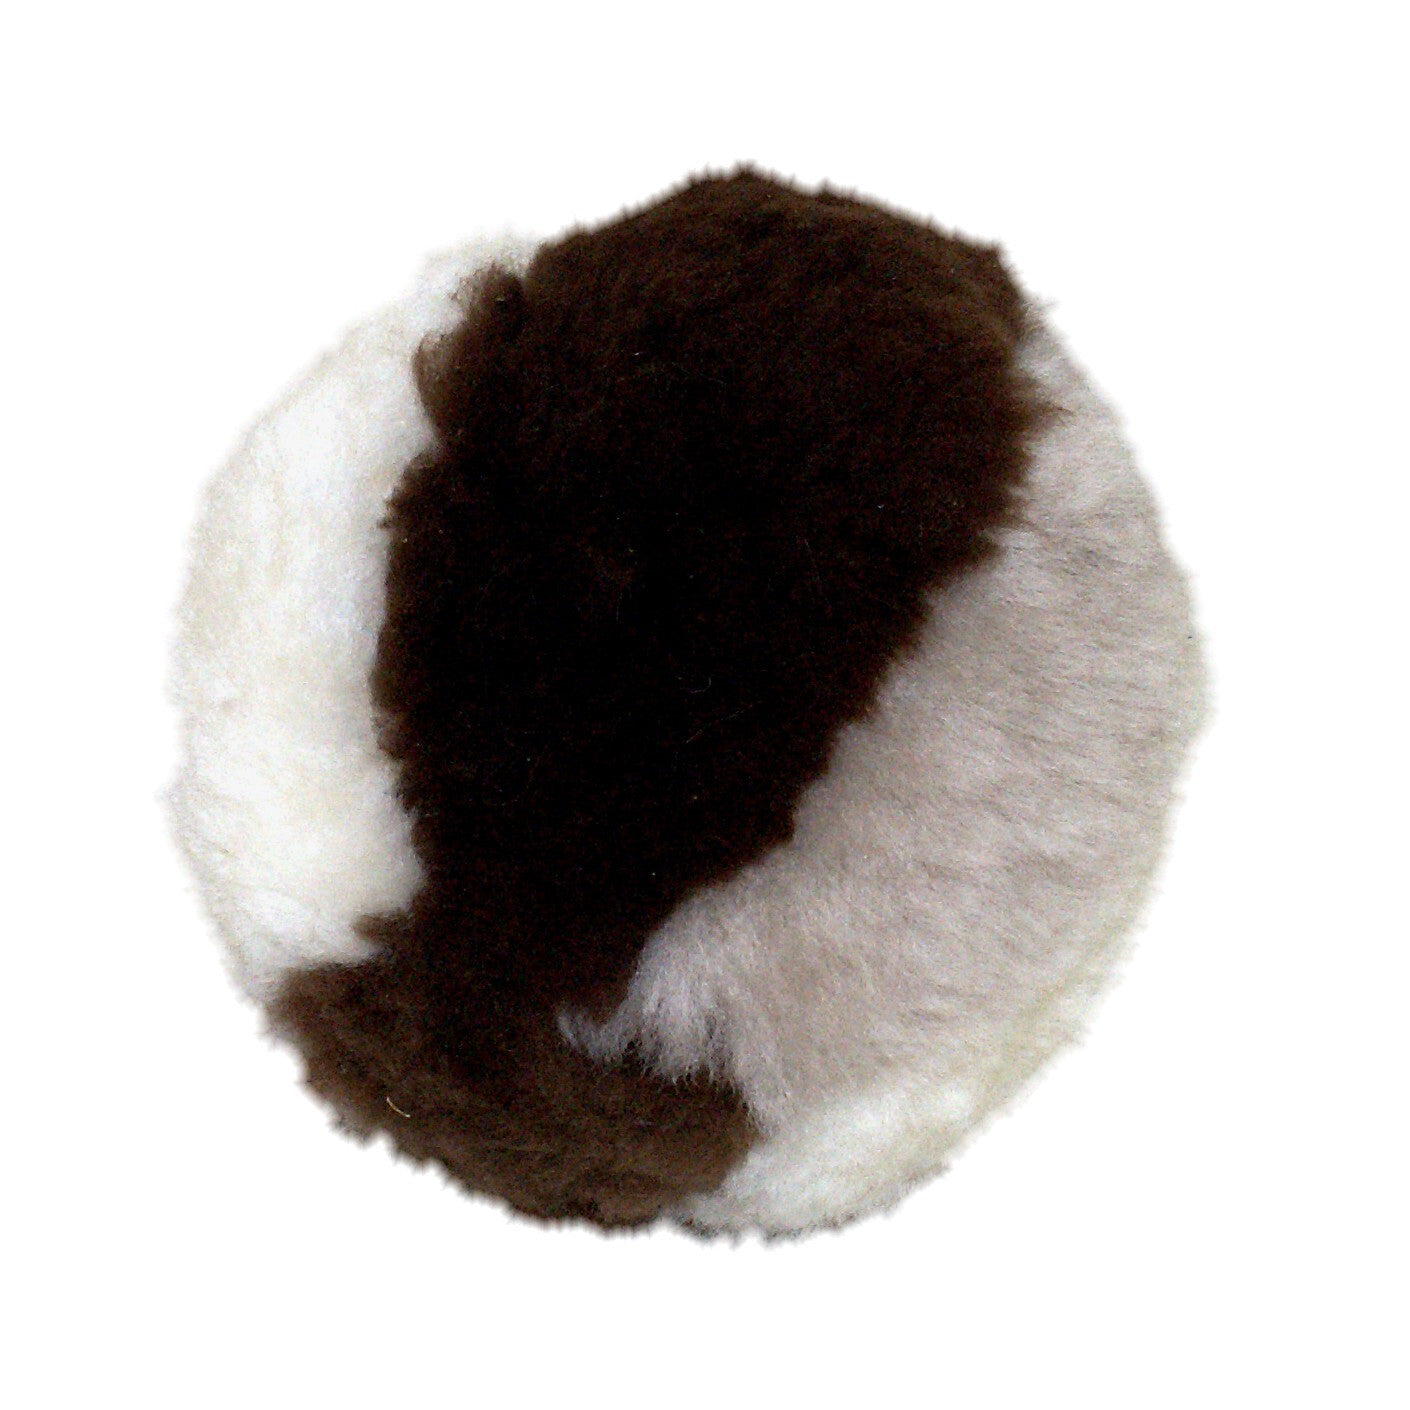 Sheepskin Ball Toy. Made in Canada by Egli's Sheep Farm